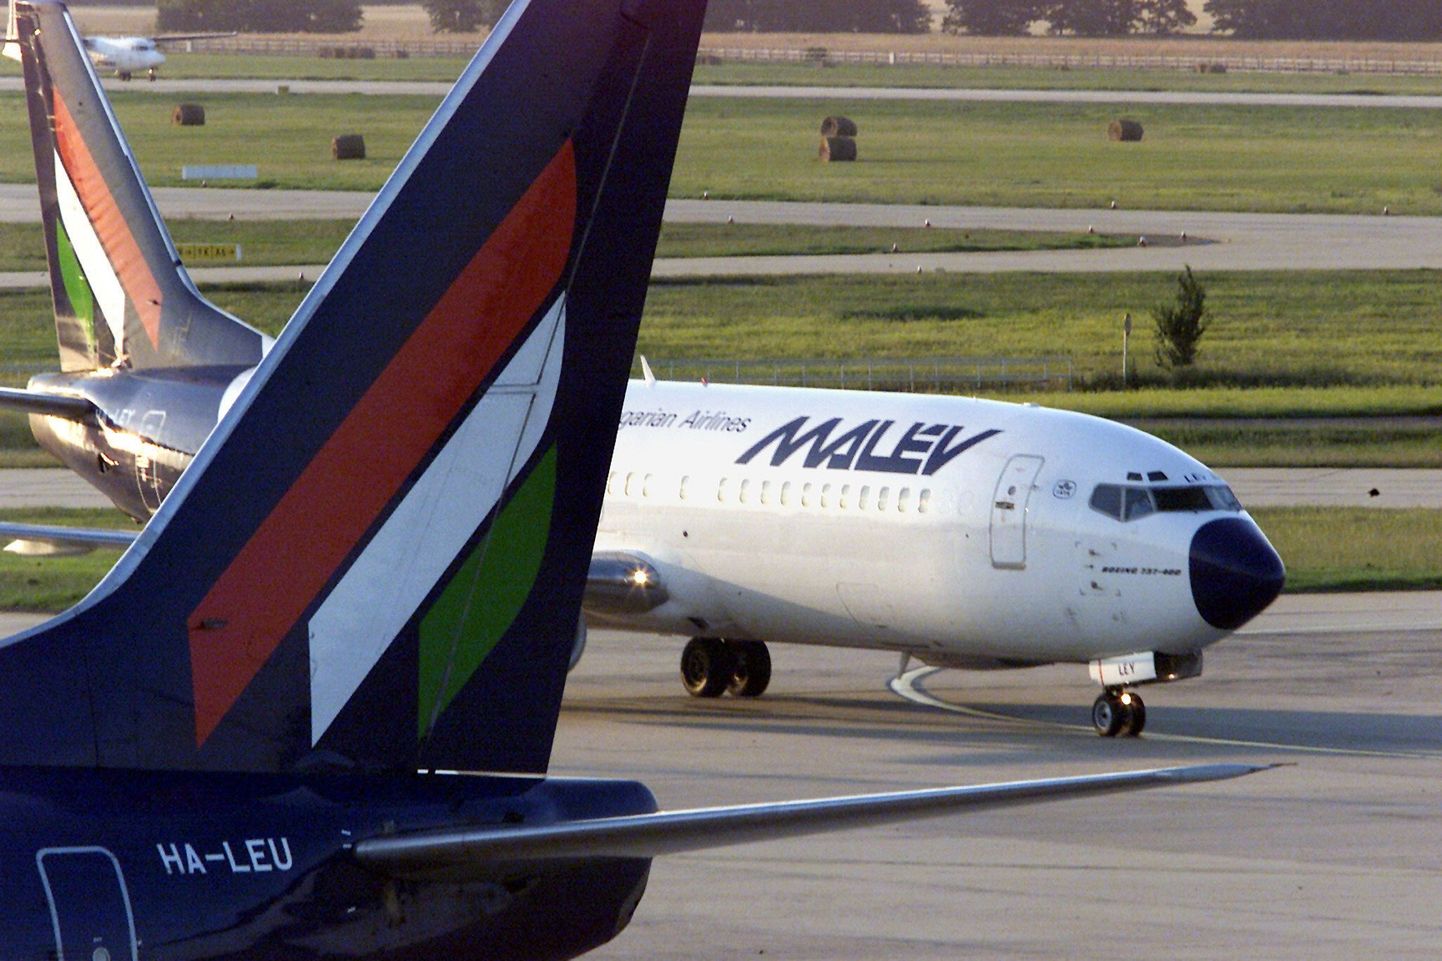 Ungari lennukompanii Malev lennuk Budapesti lennuväljal.